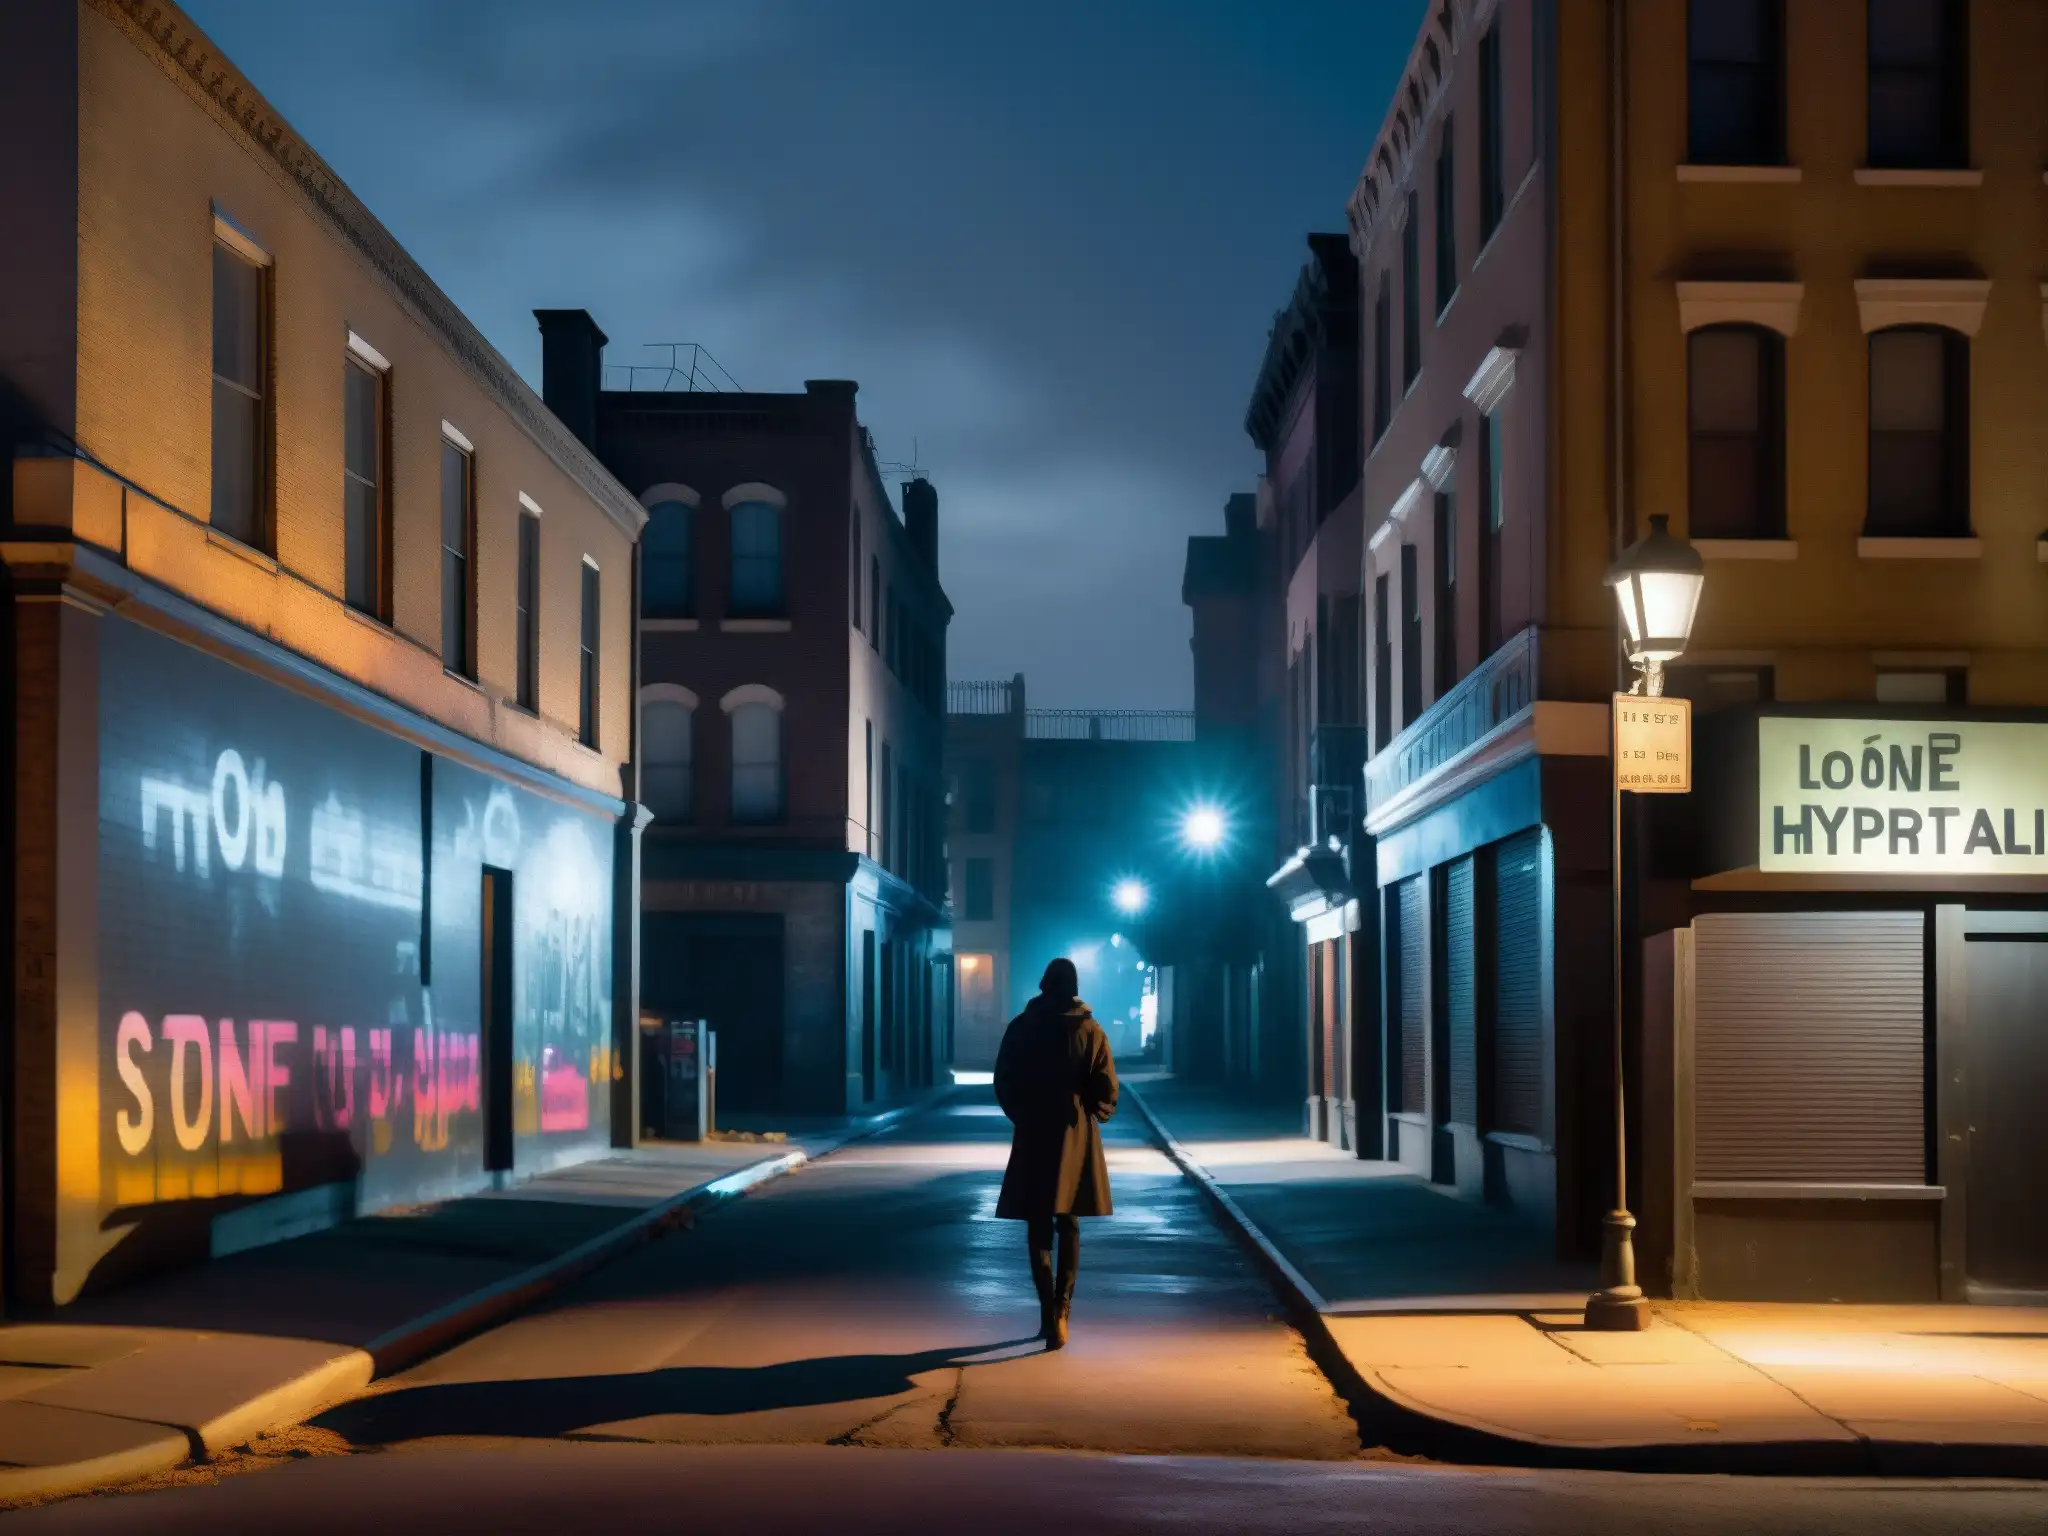 Una oscura calle de la ciudad de noche, con sombras y siluetas de edificios